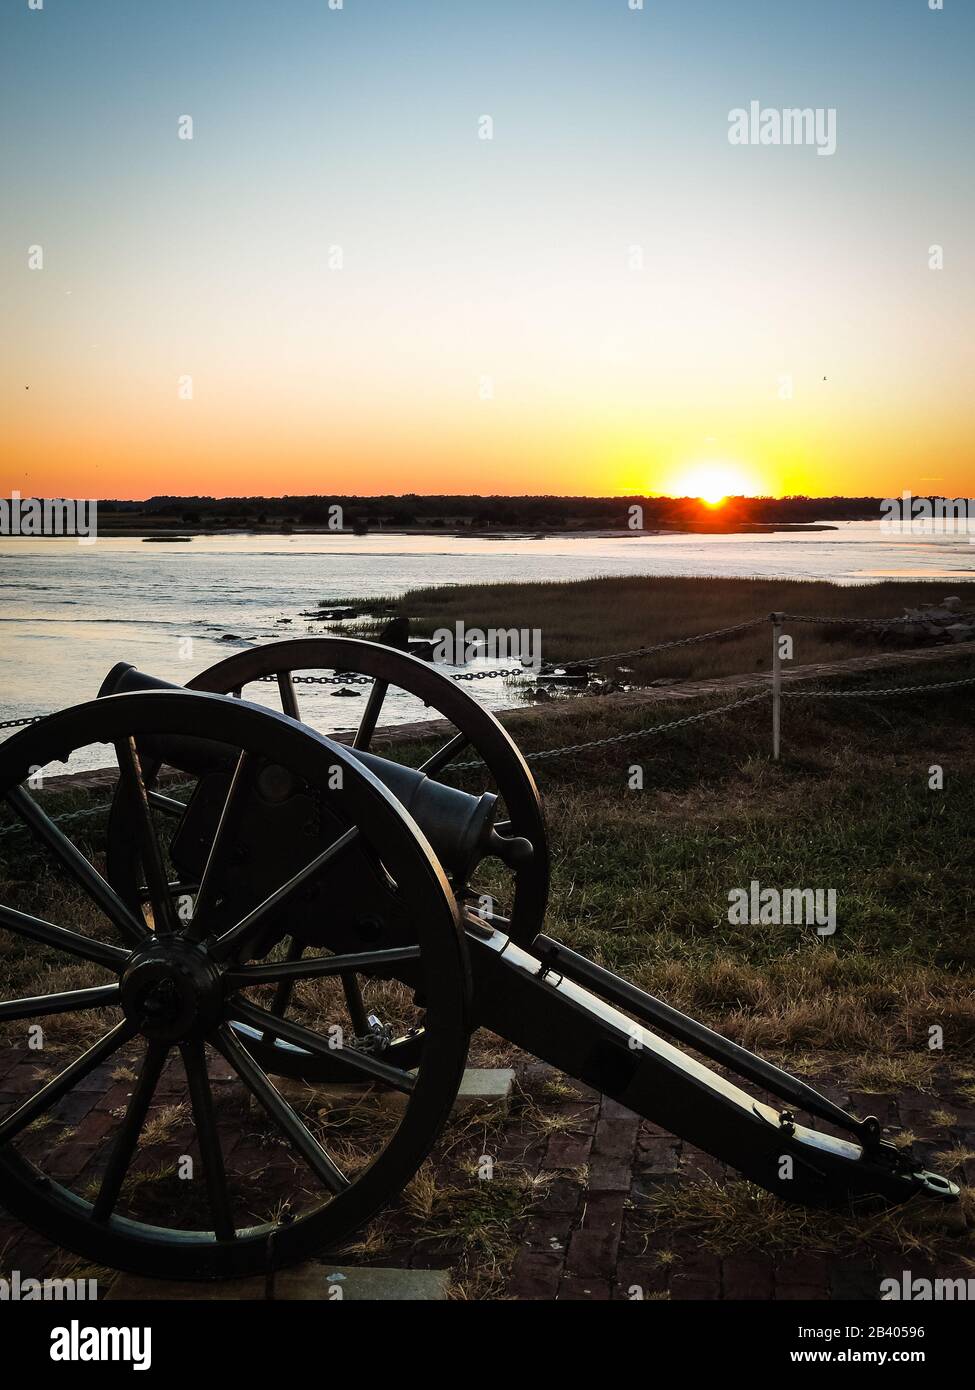 Canon historique de guerre civile sur l'île de fort Sumter près de Charleston, Caroline du Sud avant beau coucher de soleil orange. Aucune personne visible, copyspace. Banque D'Images